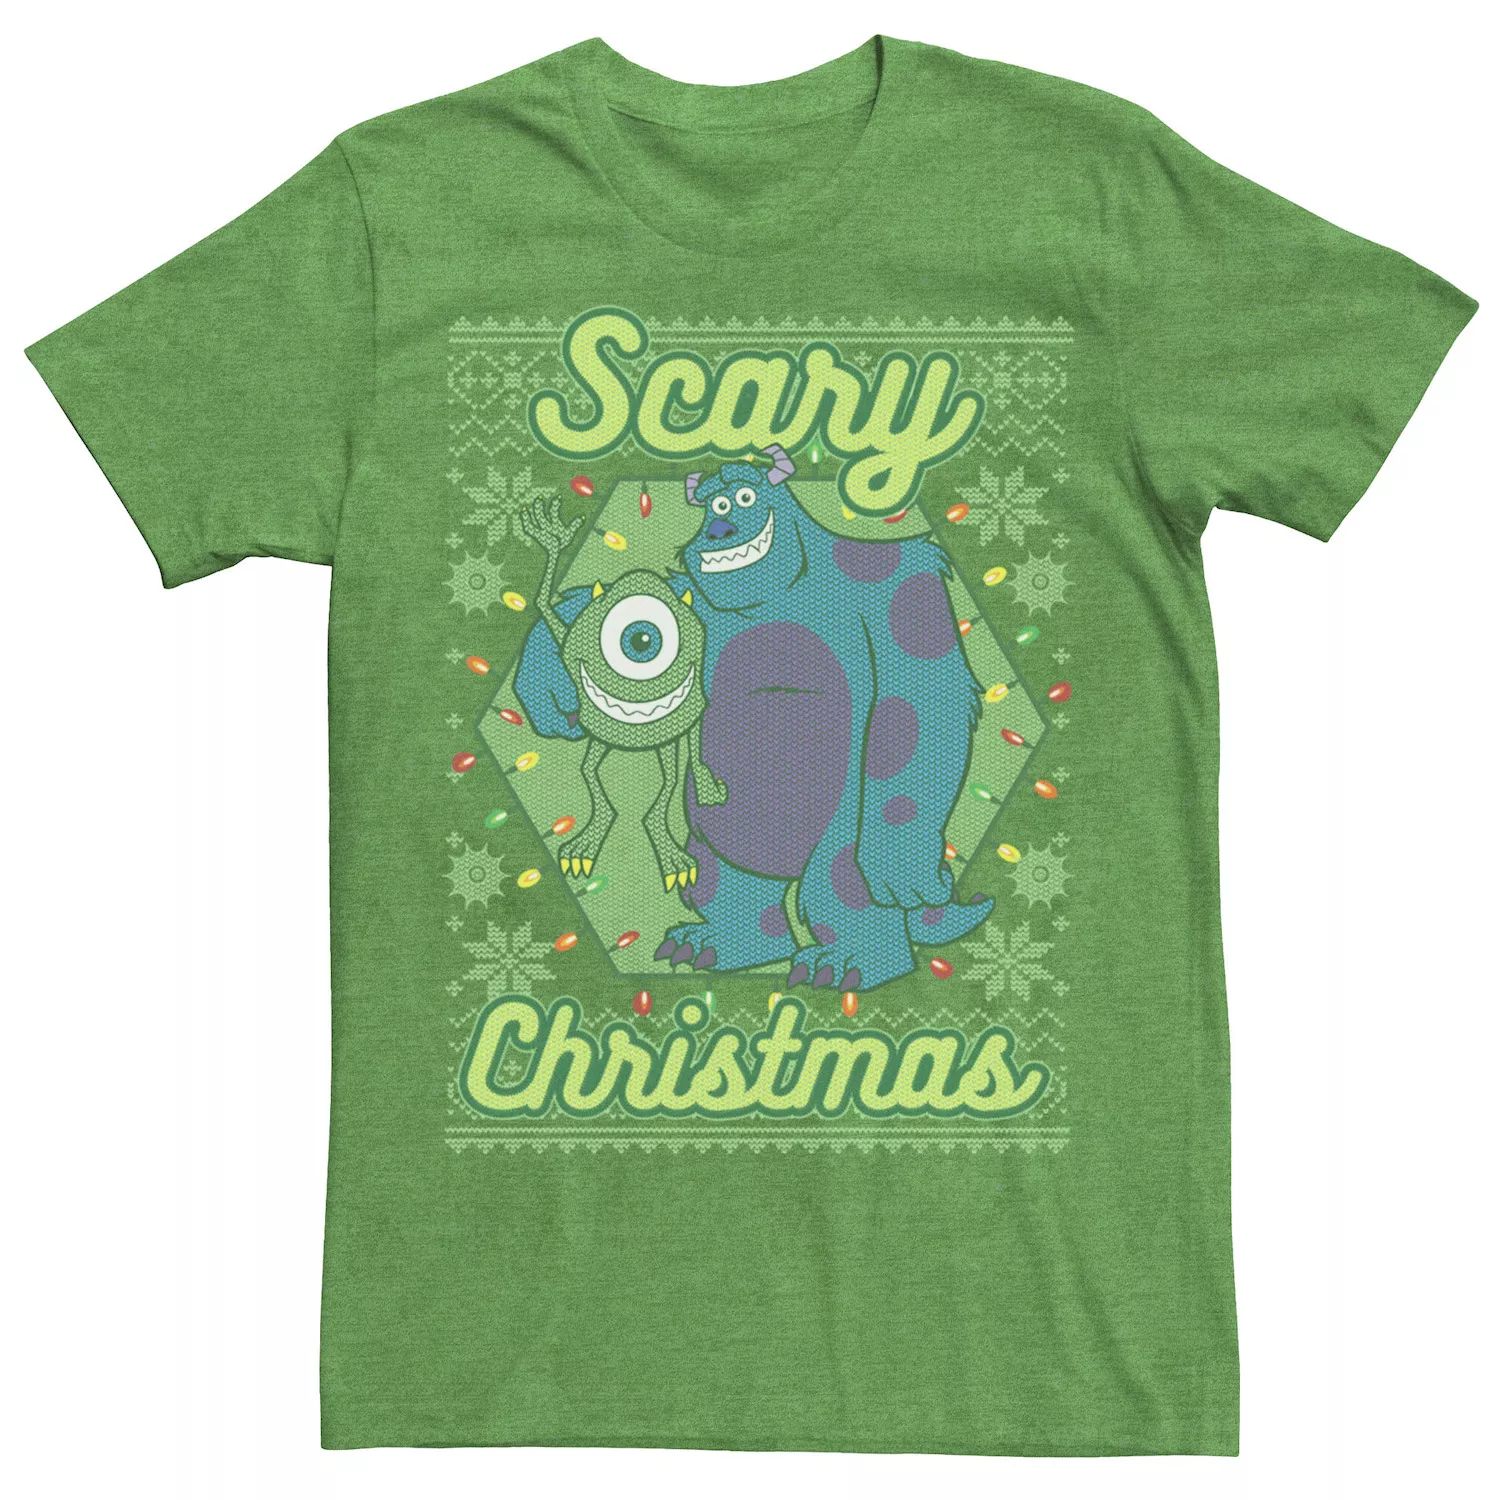 цена Мужская страшная рождественская футболка Disney/Pixar Monsters University Disney / Pixar